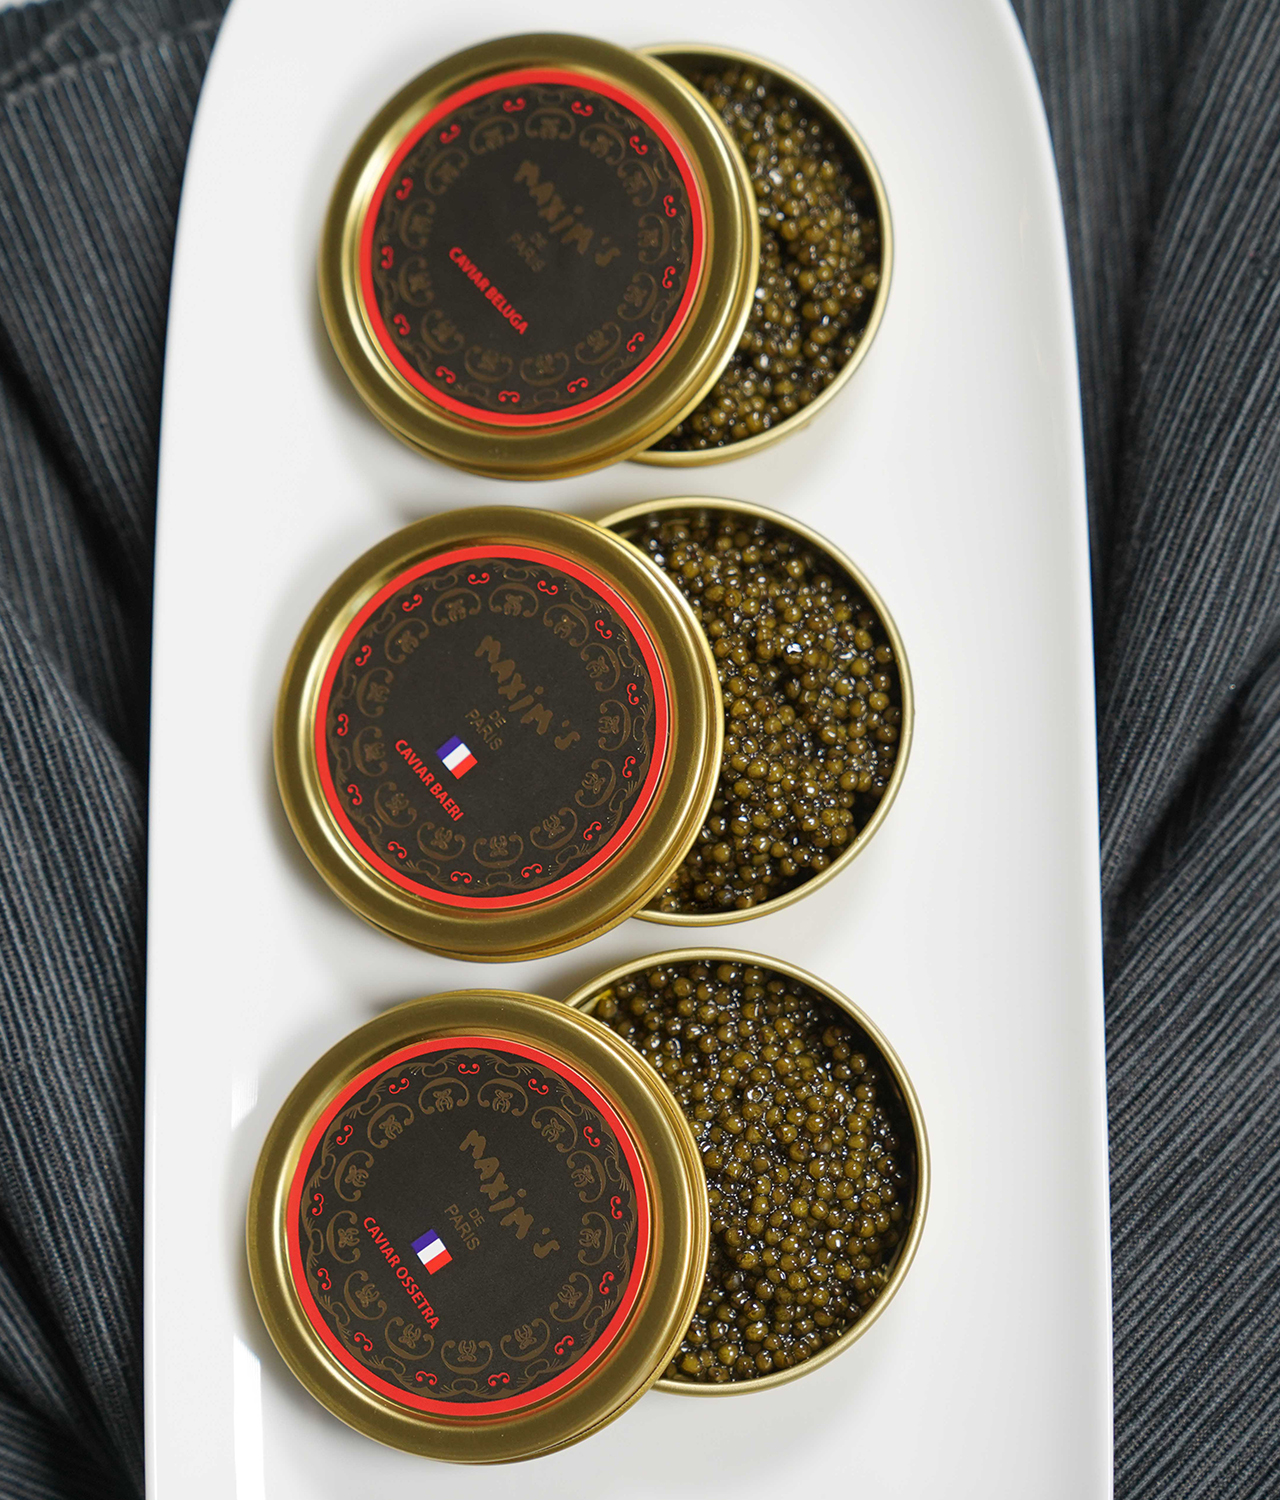 Caviar Français Baeri 50 g au Meilleur Prix - Cdiscount Au quotidien